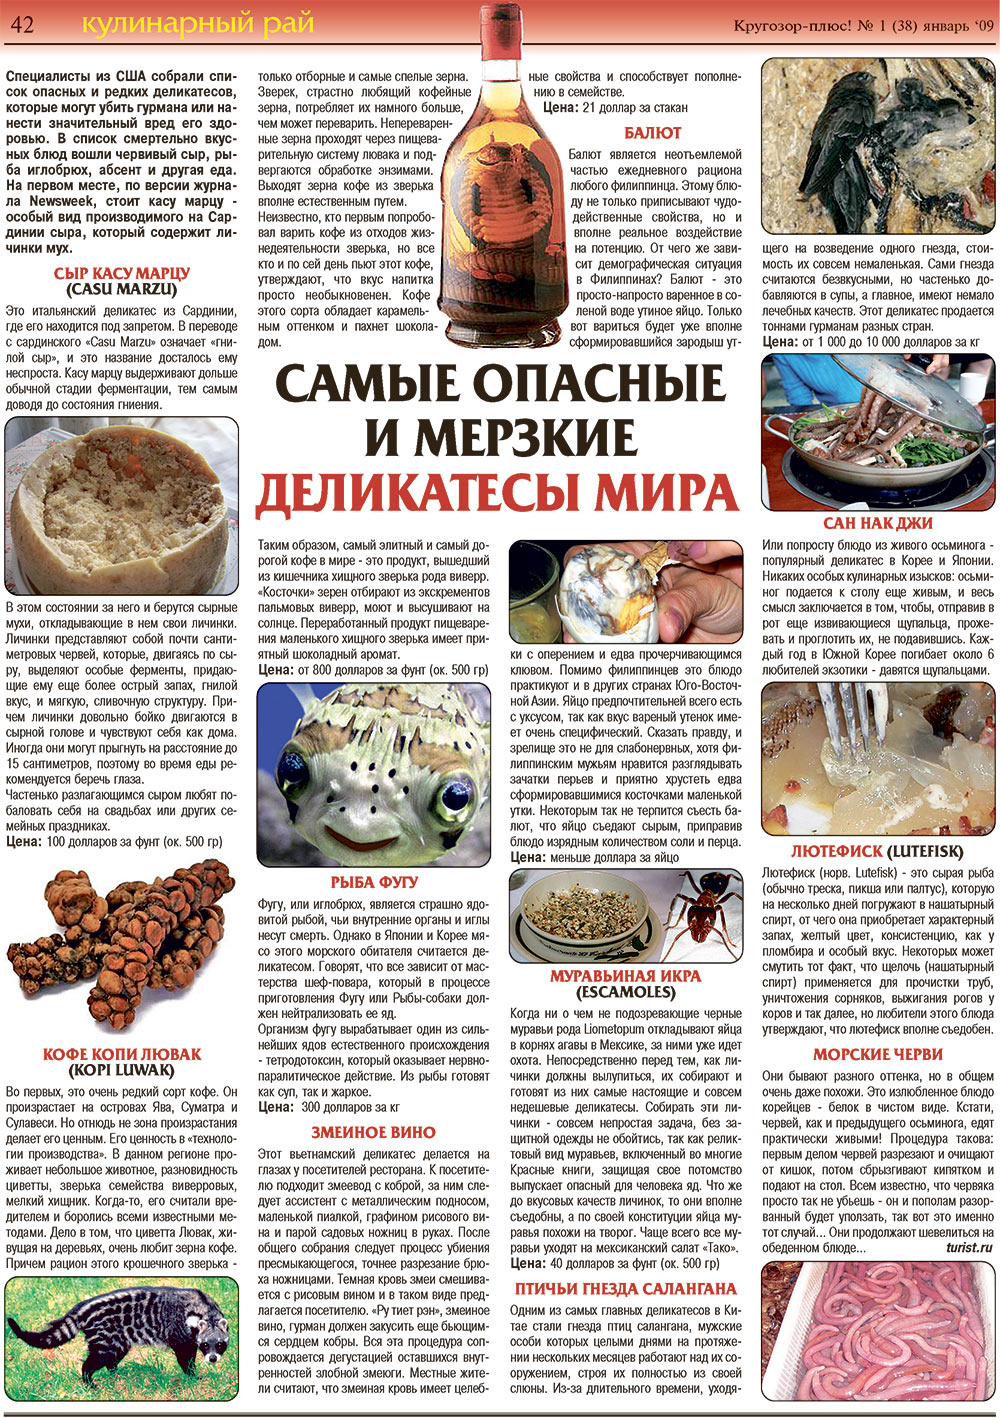 Кругозор плюс!, газета. 2009 №1 стр.42